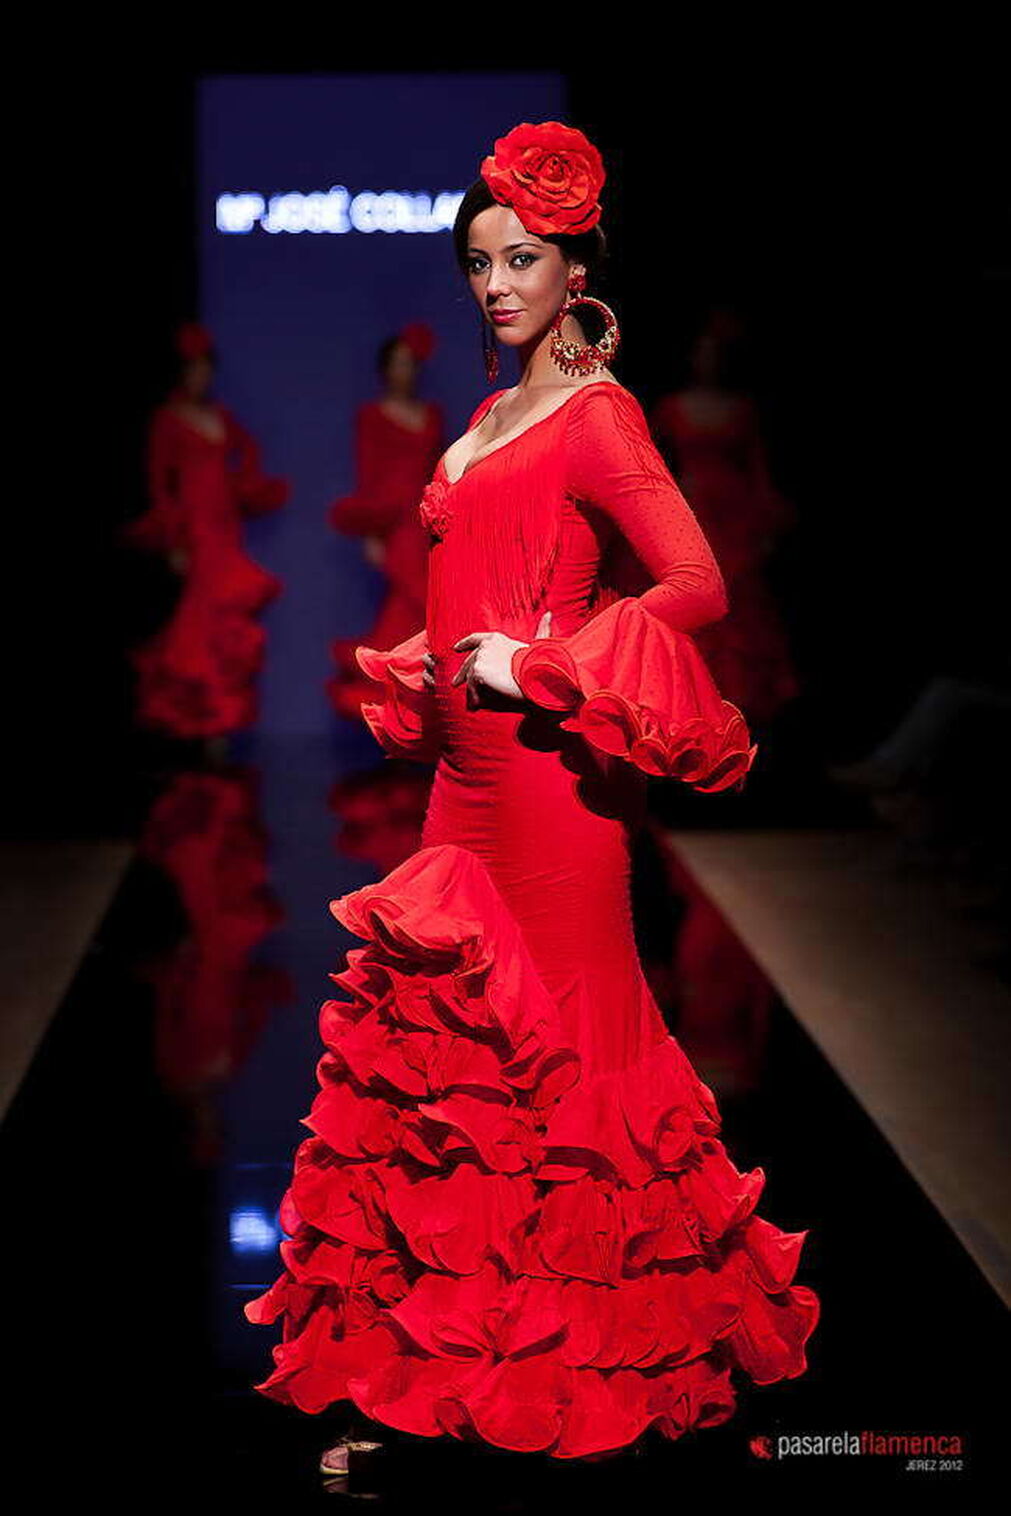 Colecci&oacute;n 'Esencia flamenca' - Pasarela Flamenca 2012